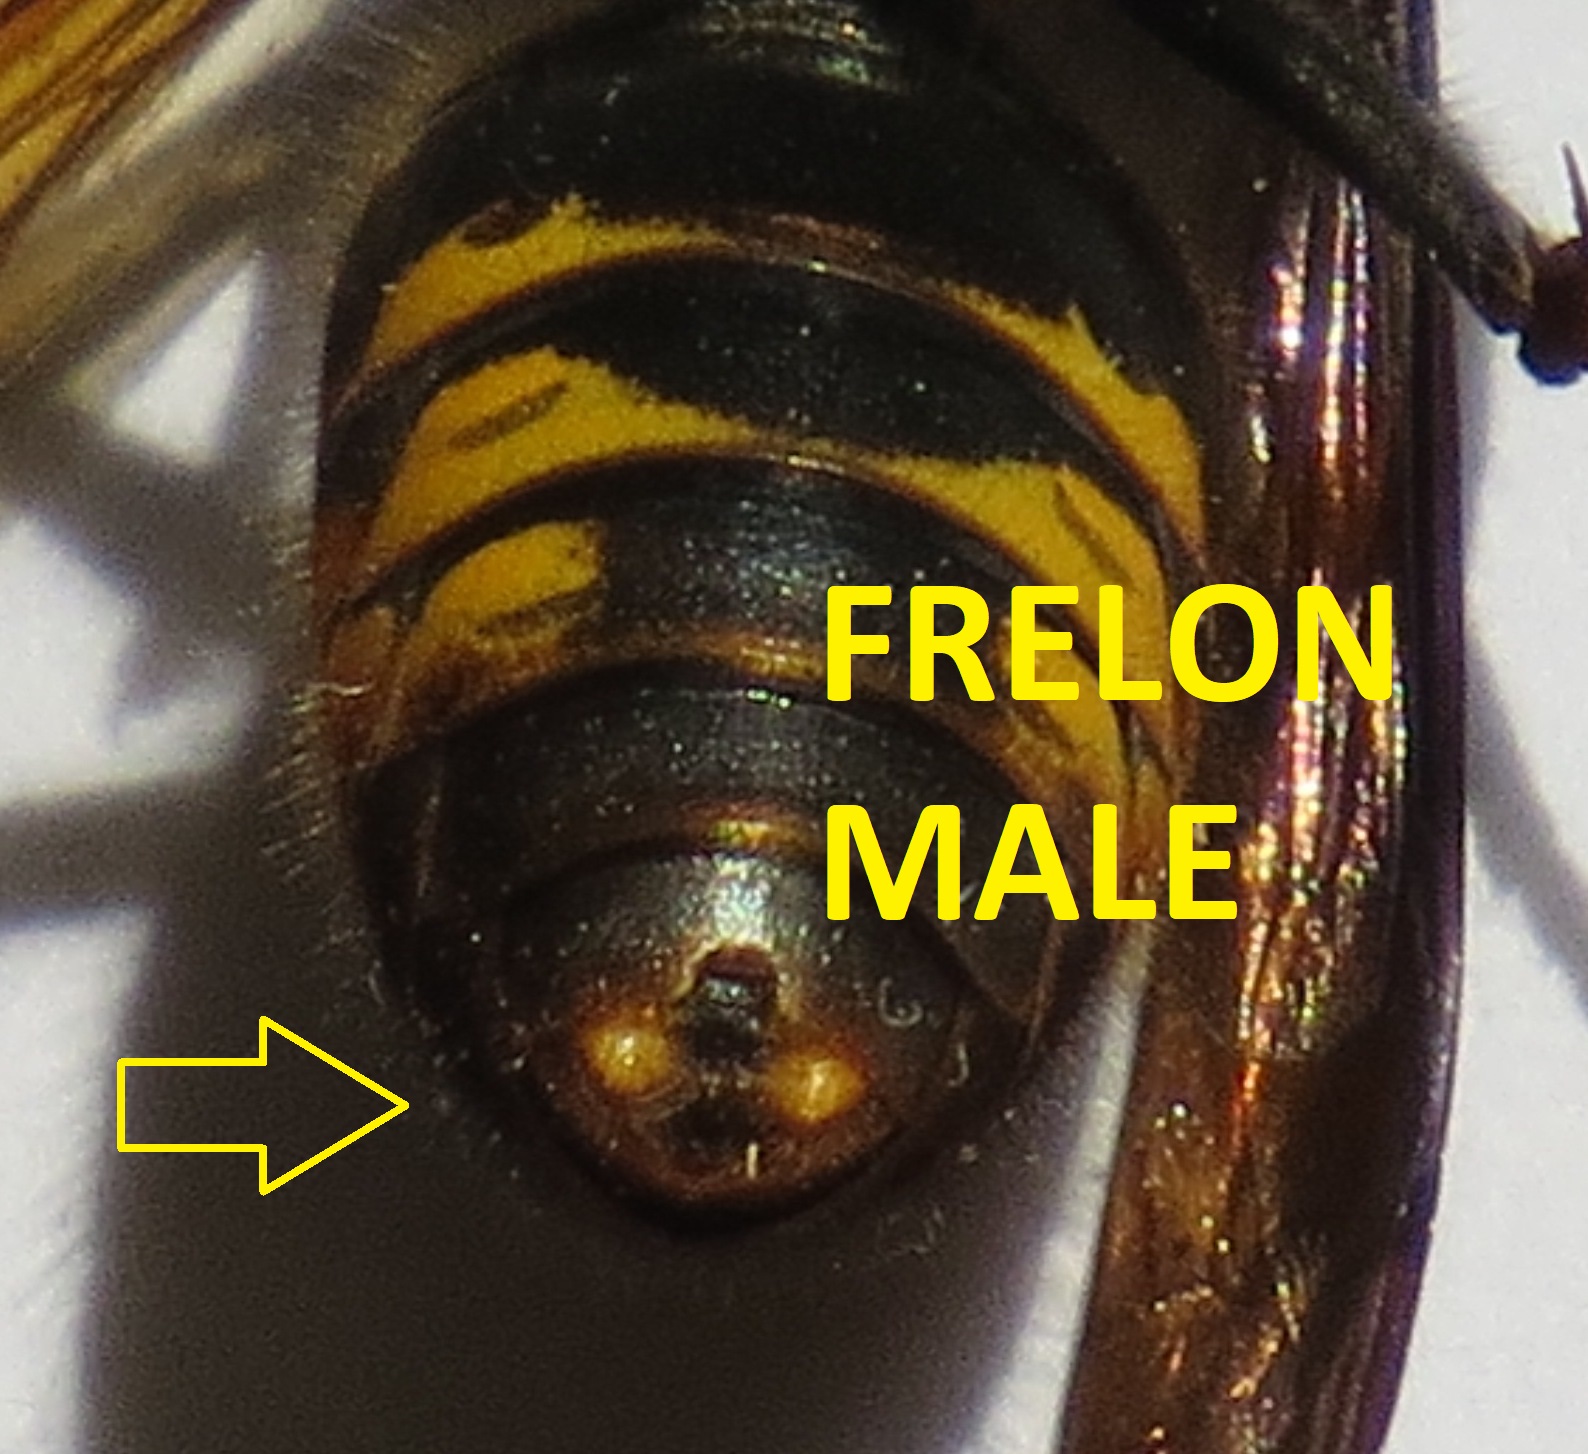 frelon asiatique male